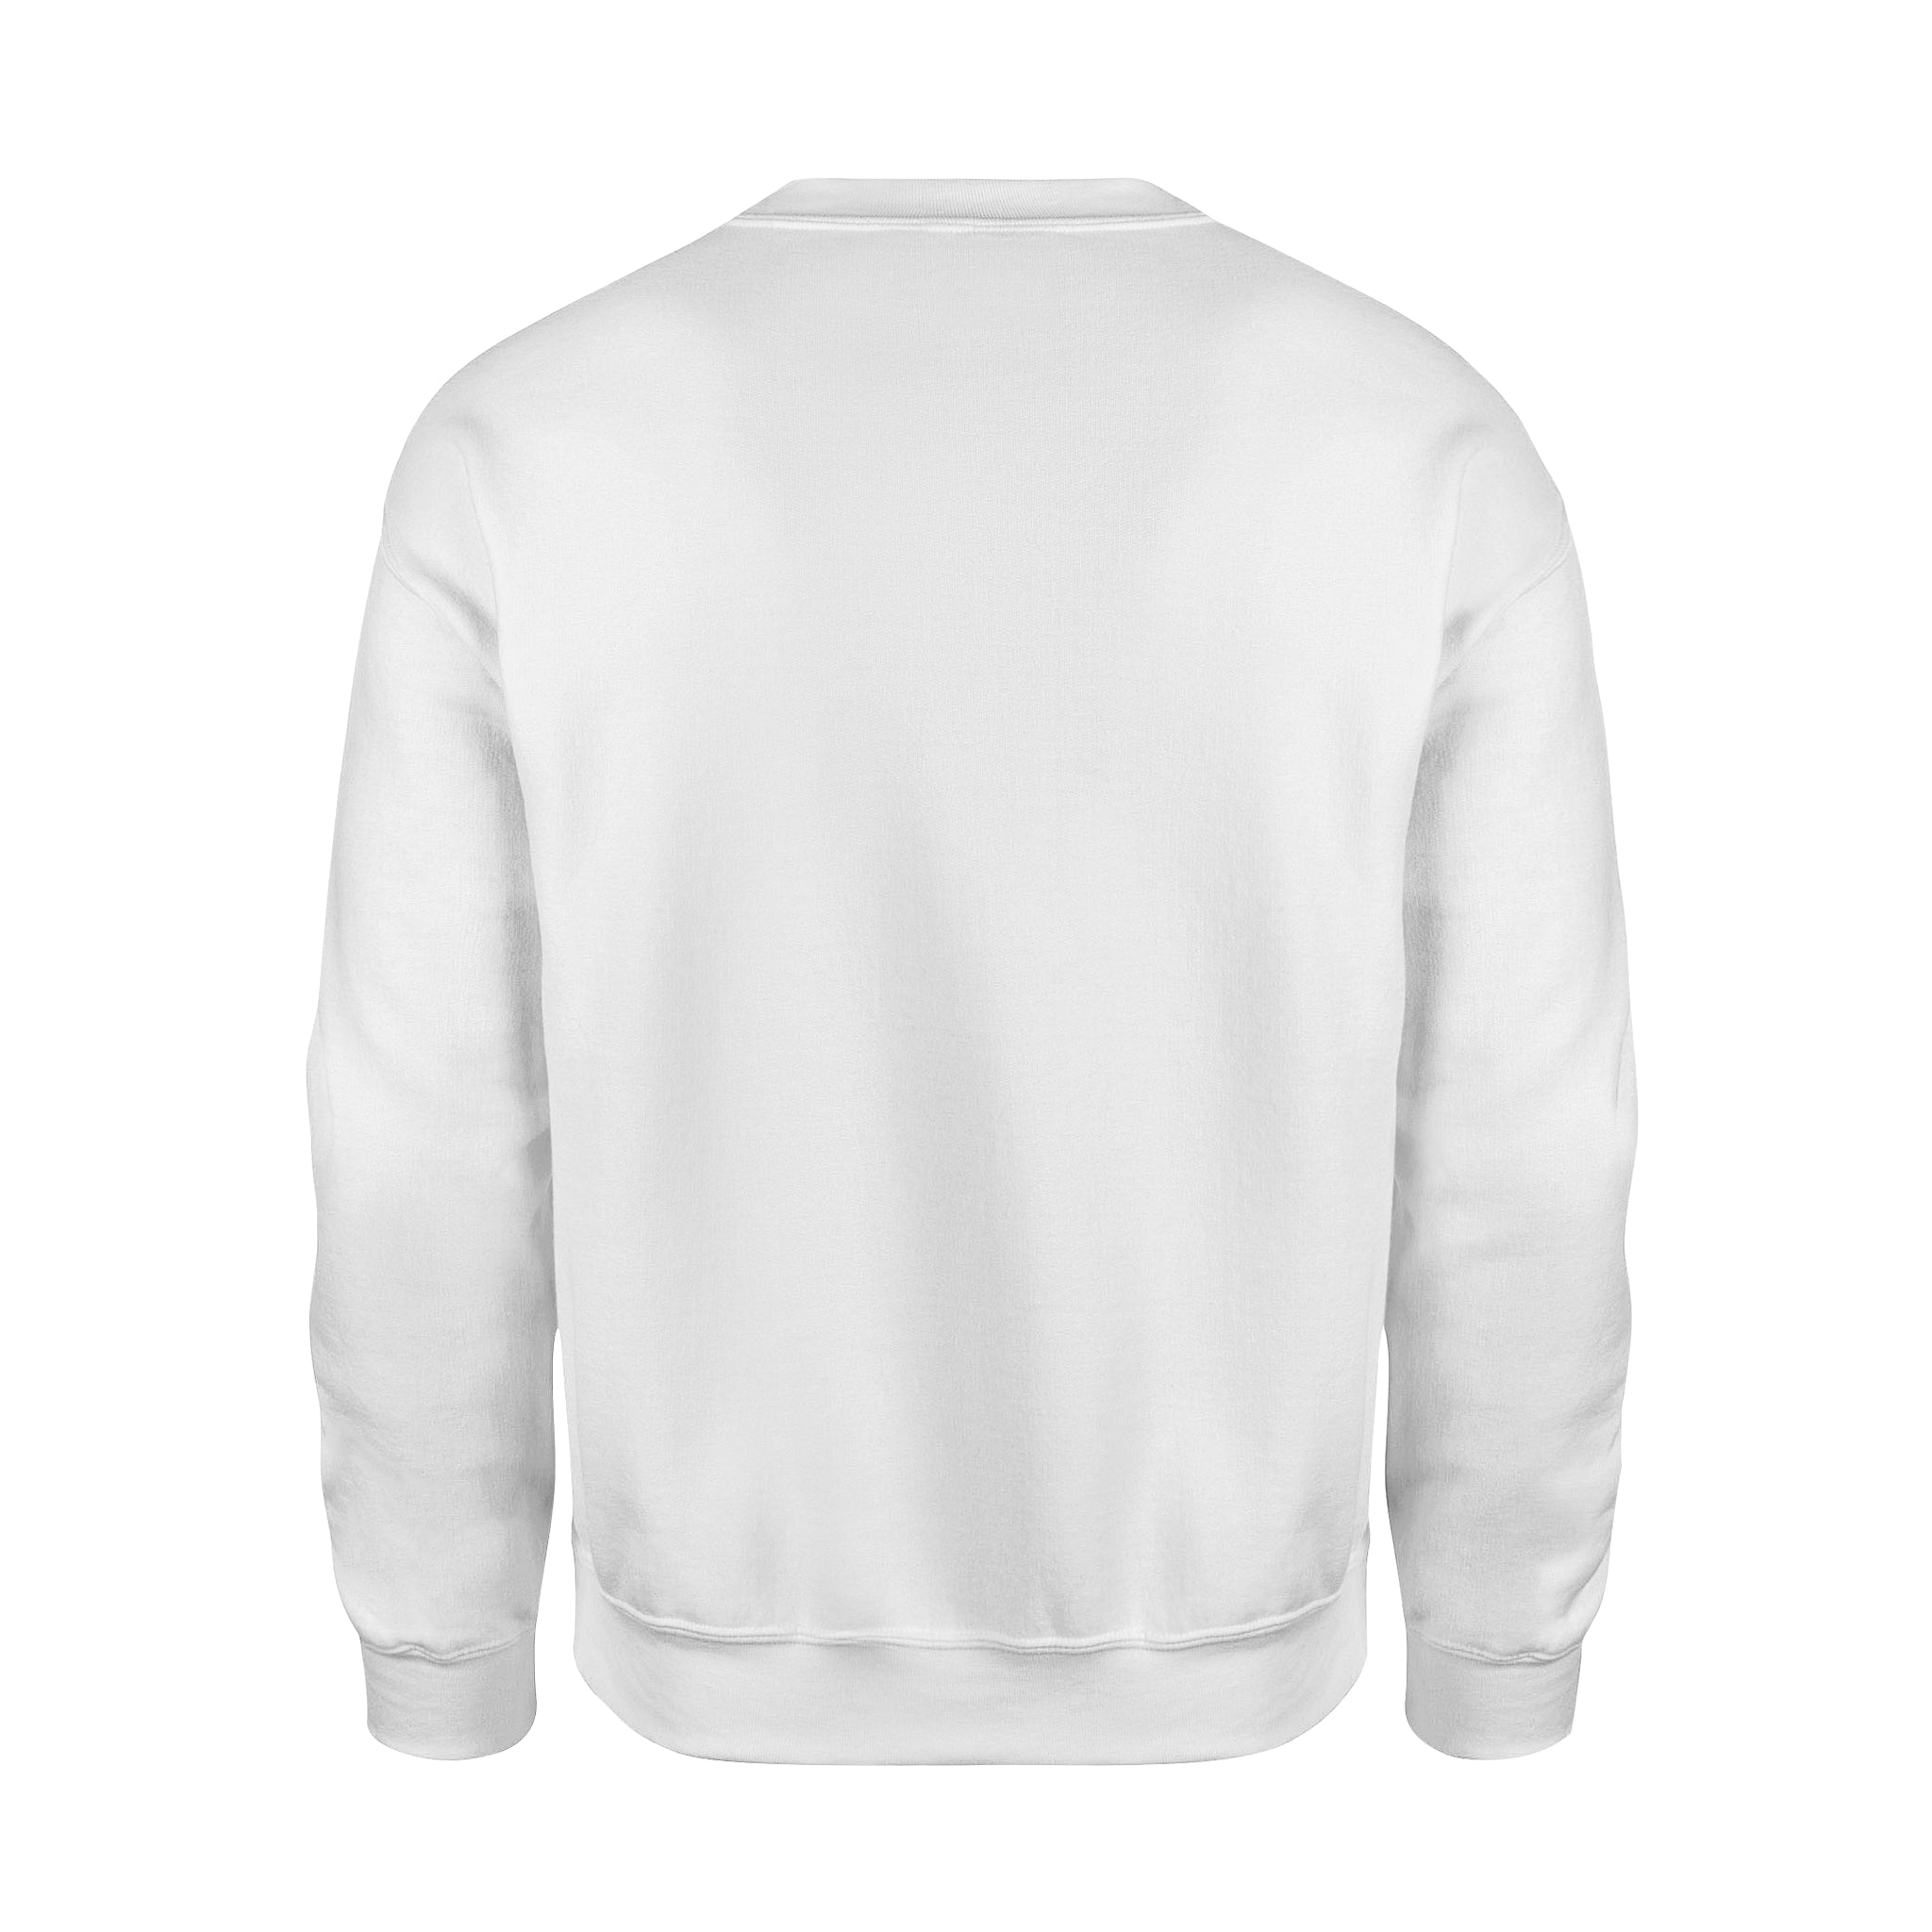 Peaceful - Fleece Sweatshirt